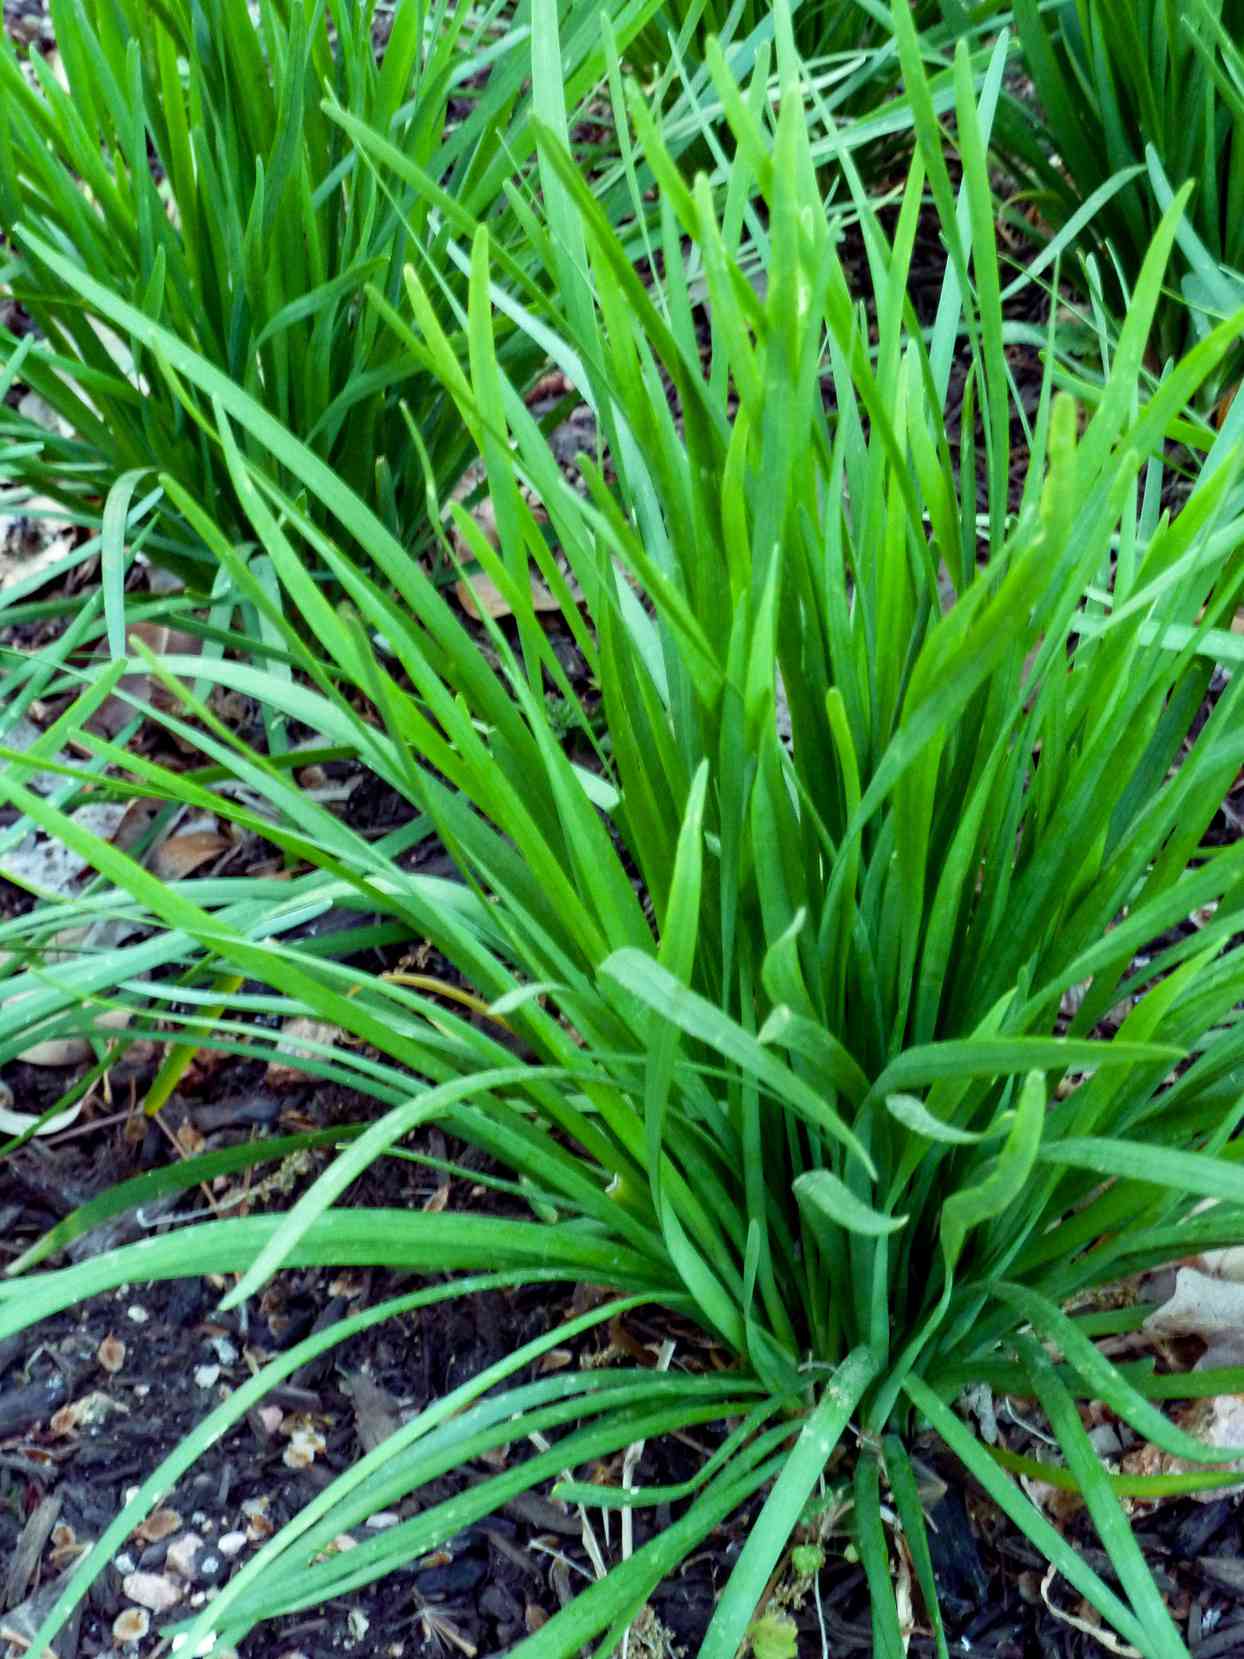 garlic chives Allium tuberosum